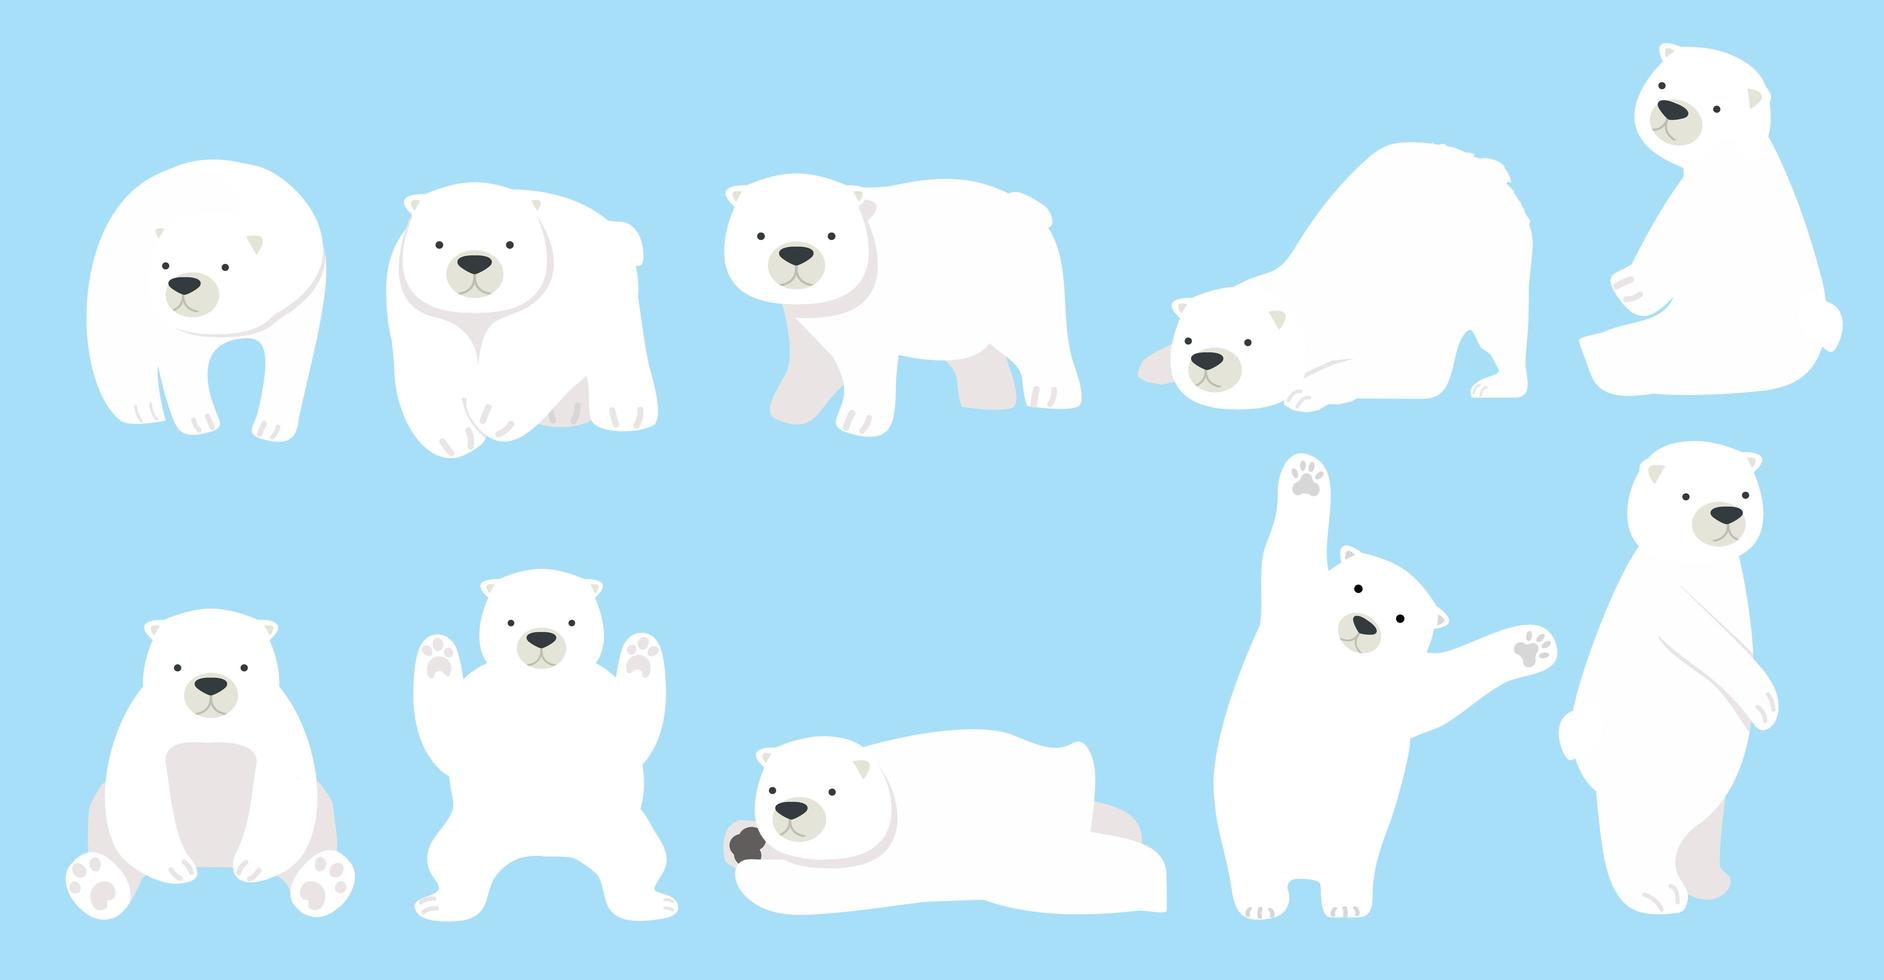 lustiger Zeichensatz des niedlichen Eisbären vektor